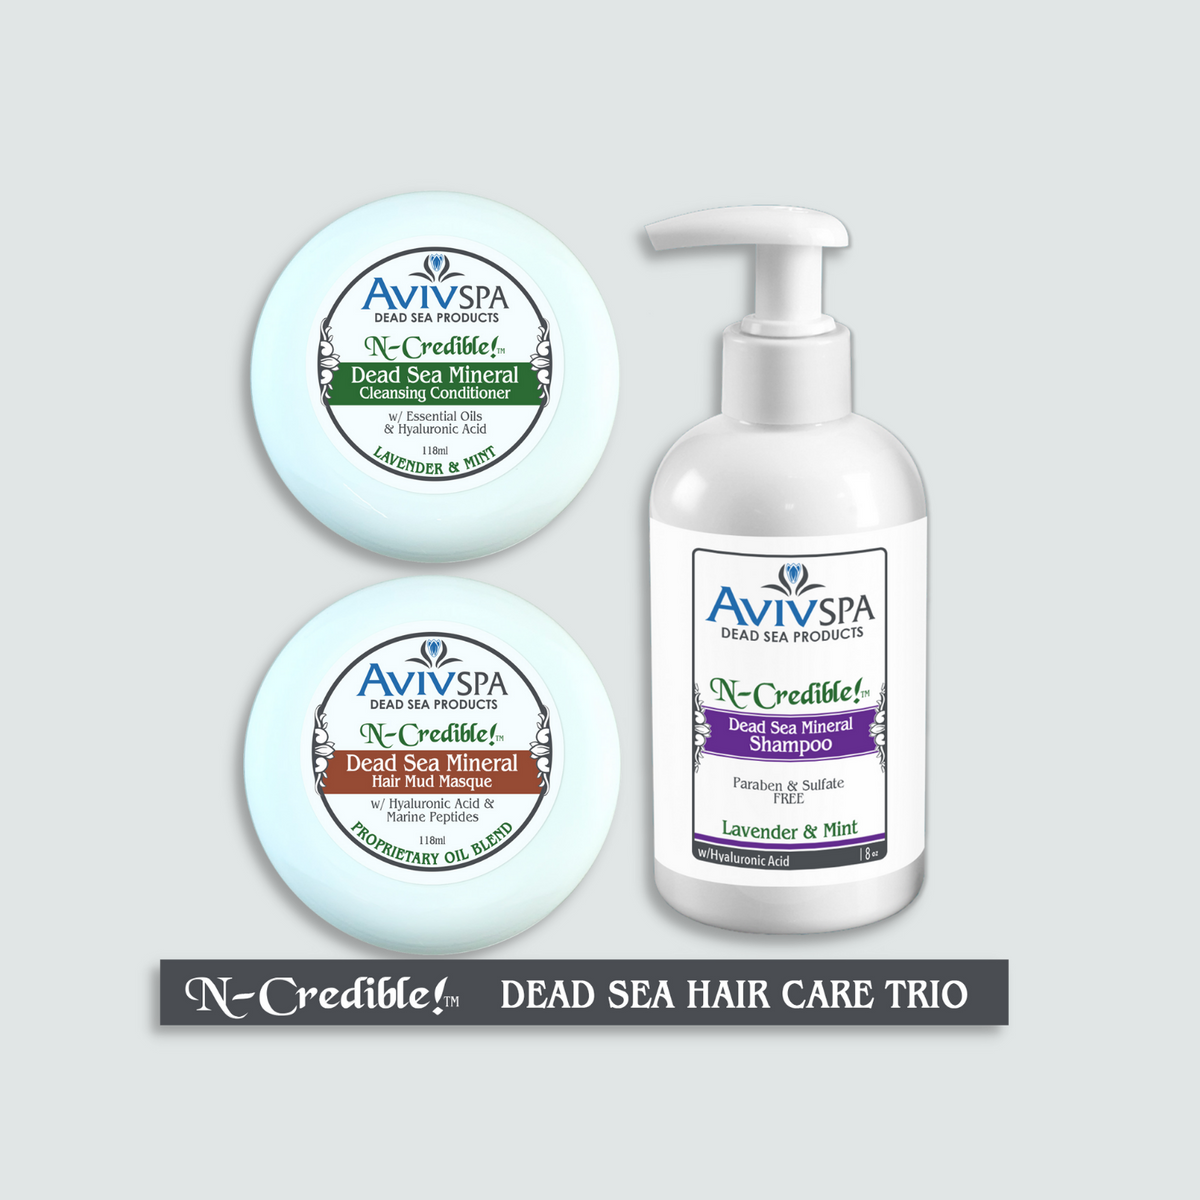 N-Credible! Dead Sea Hair Care TRIO